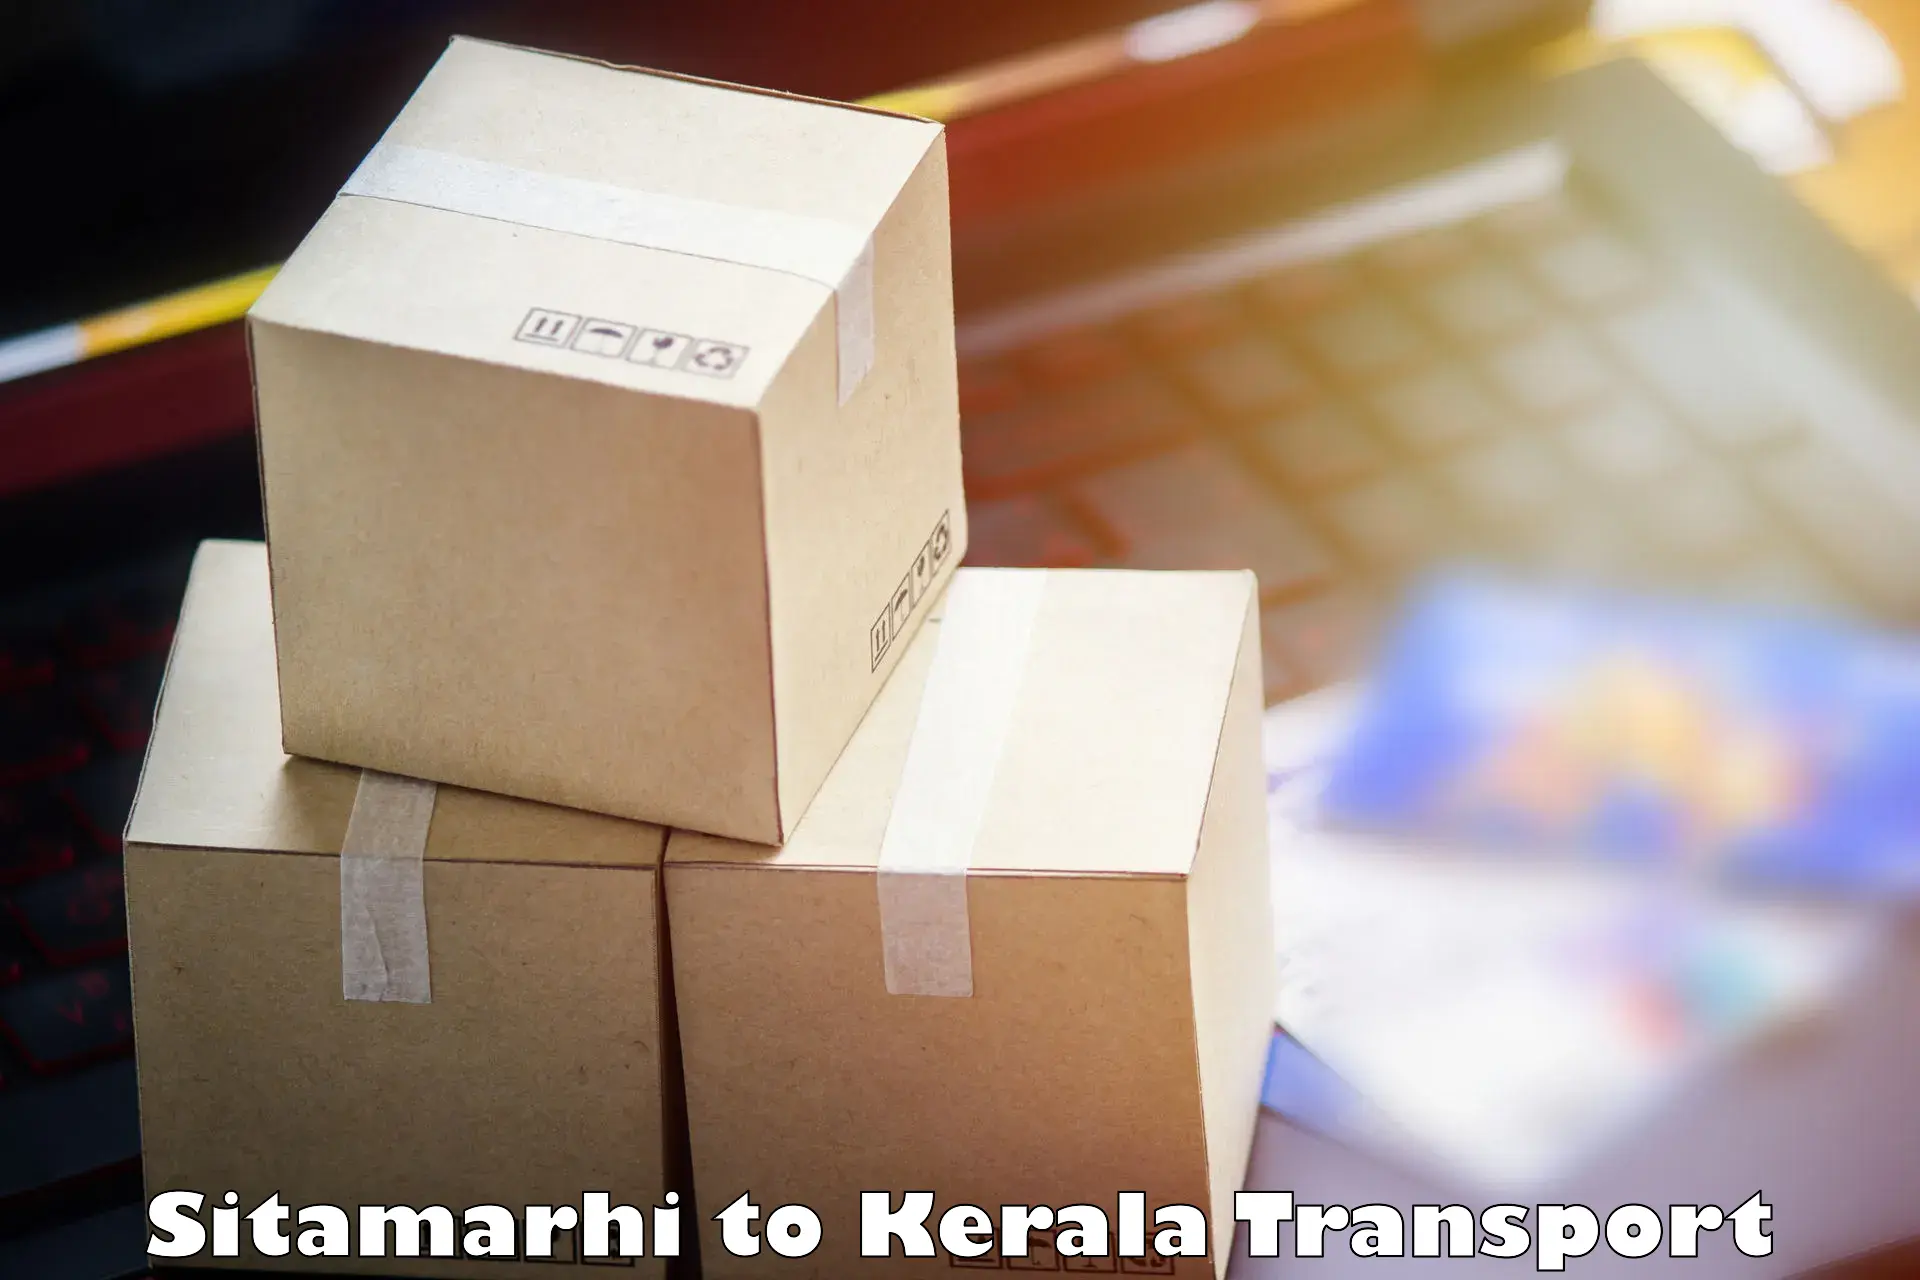 Furniture transport service Sitamarhi to Kerala University Thiruvananthapuram